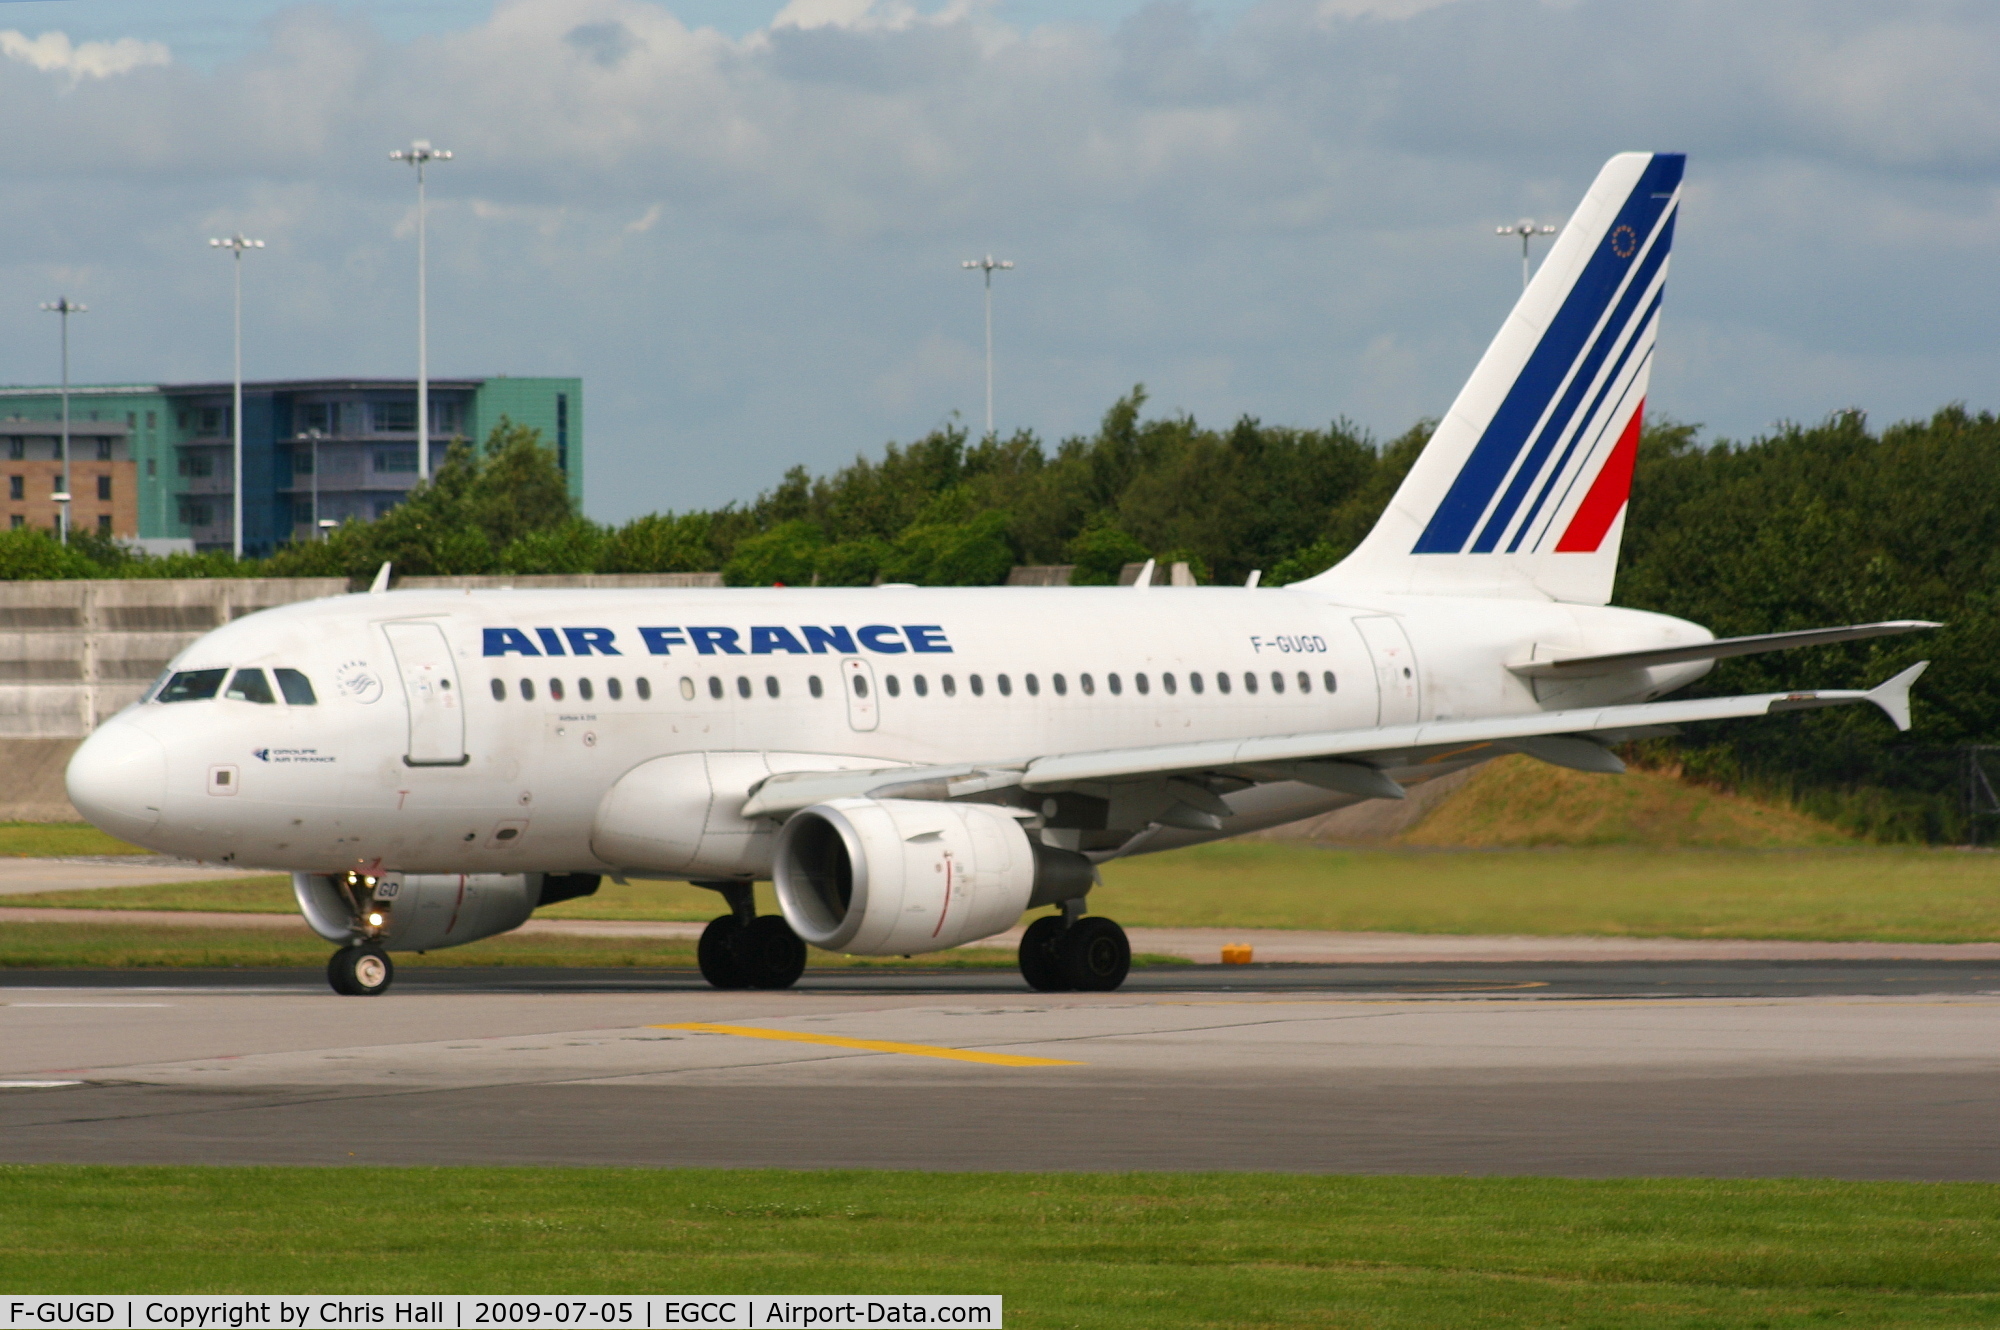 F-GUGD, 2003 Airbus A318-111 C/N 2081, Air France